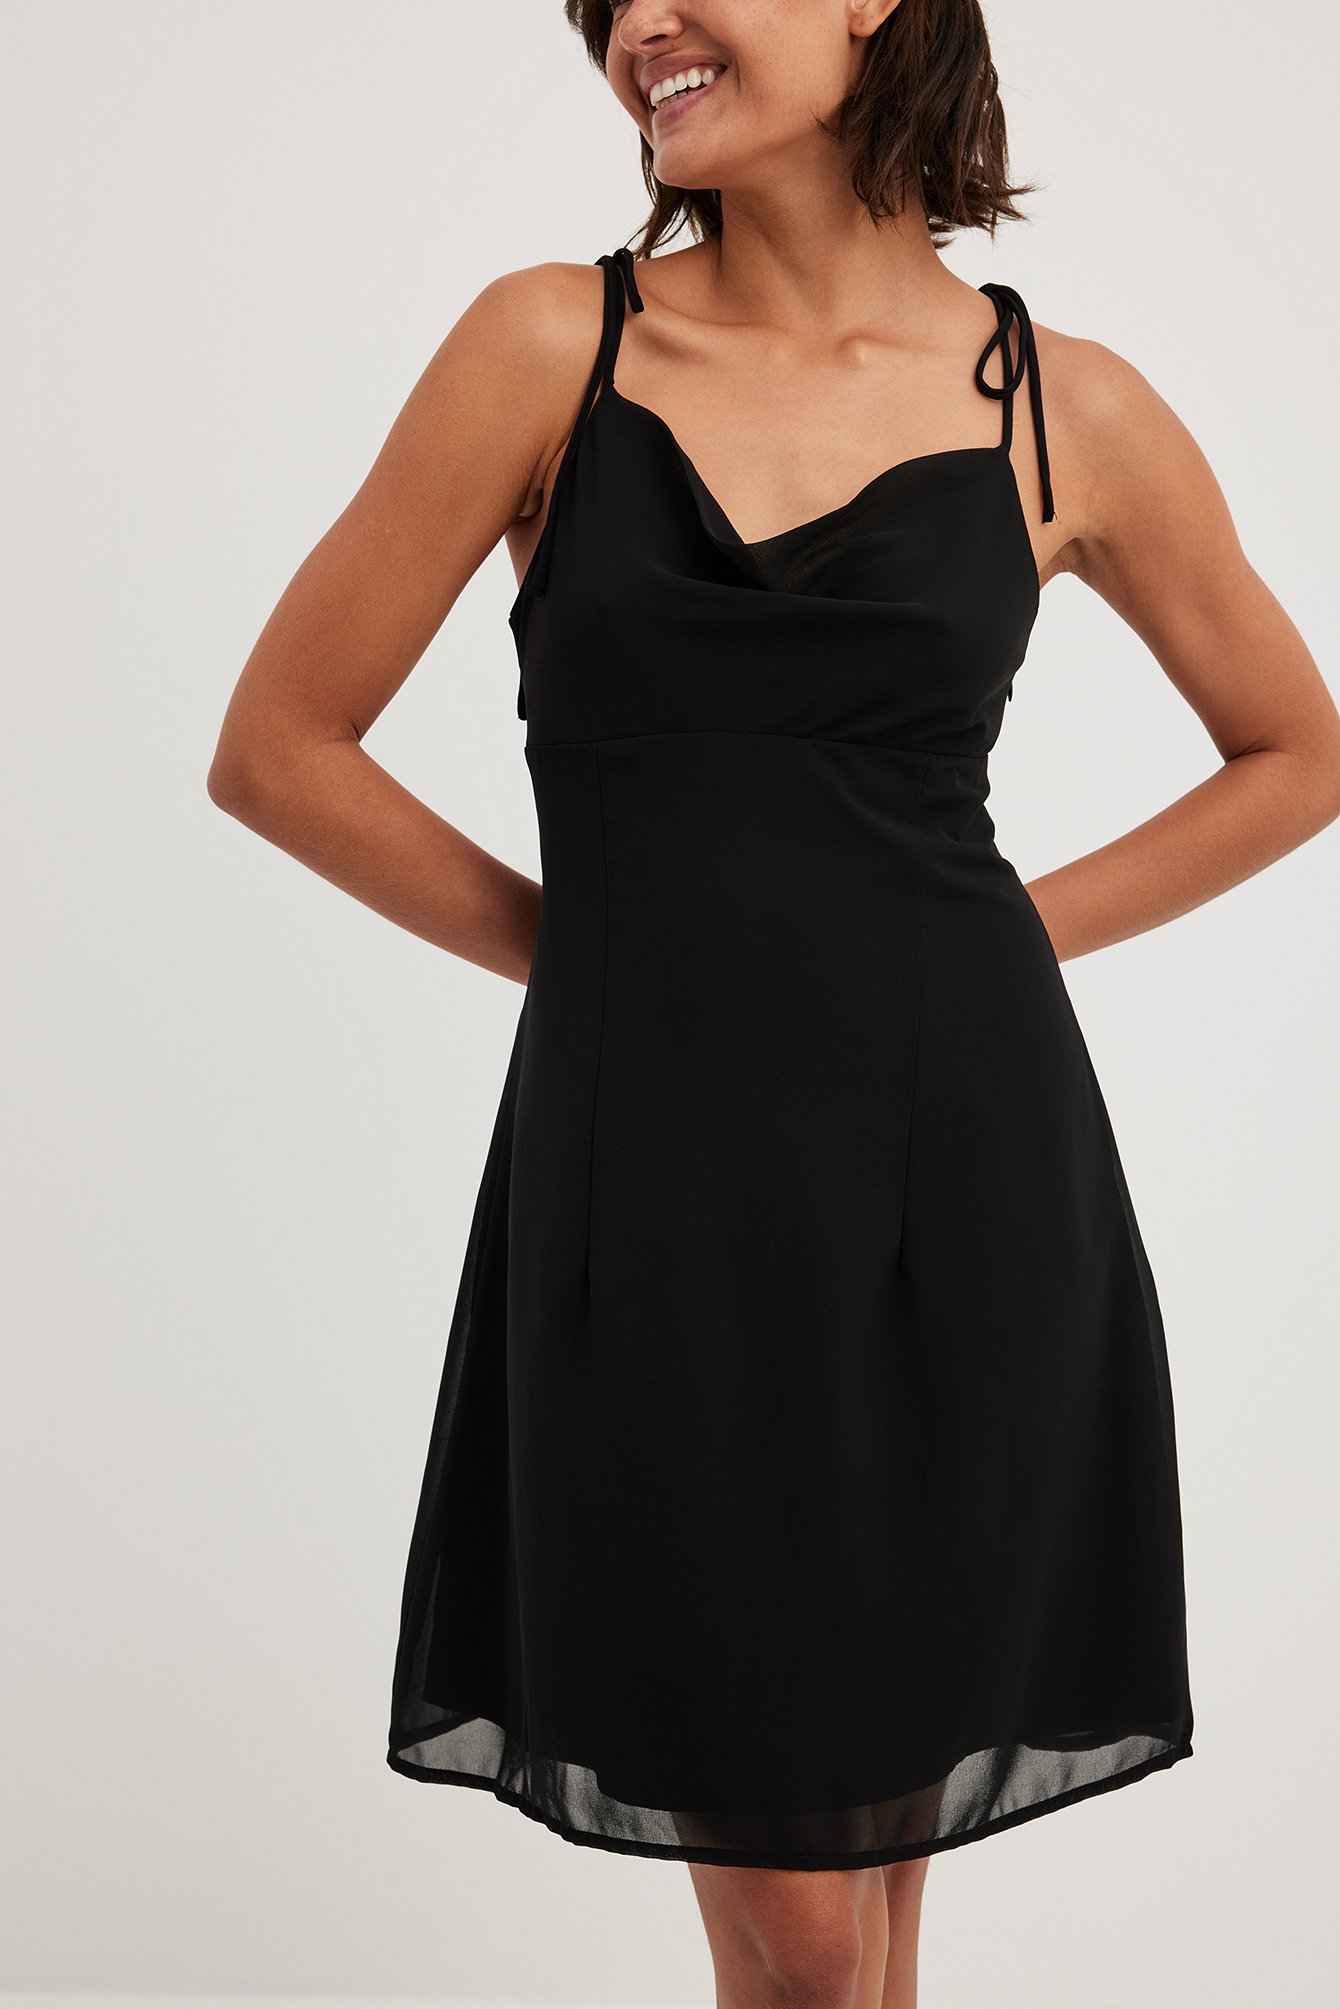 Sobriquette Herinnering Hulpeloosheid Doorzichtige mini-jurk met knoop op de schouder Zwart | NA-KD